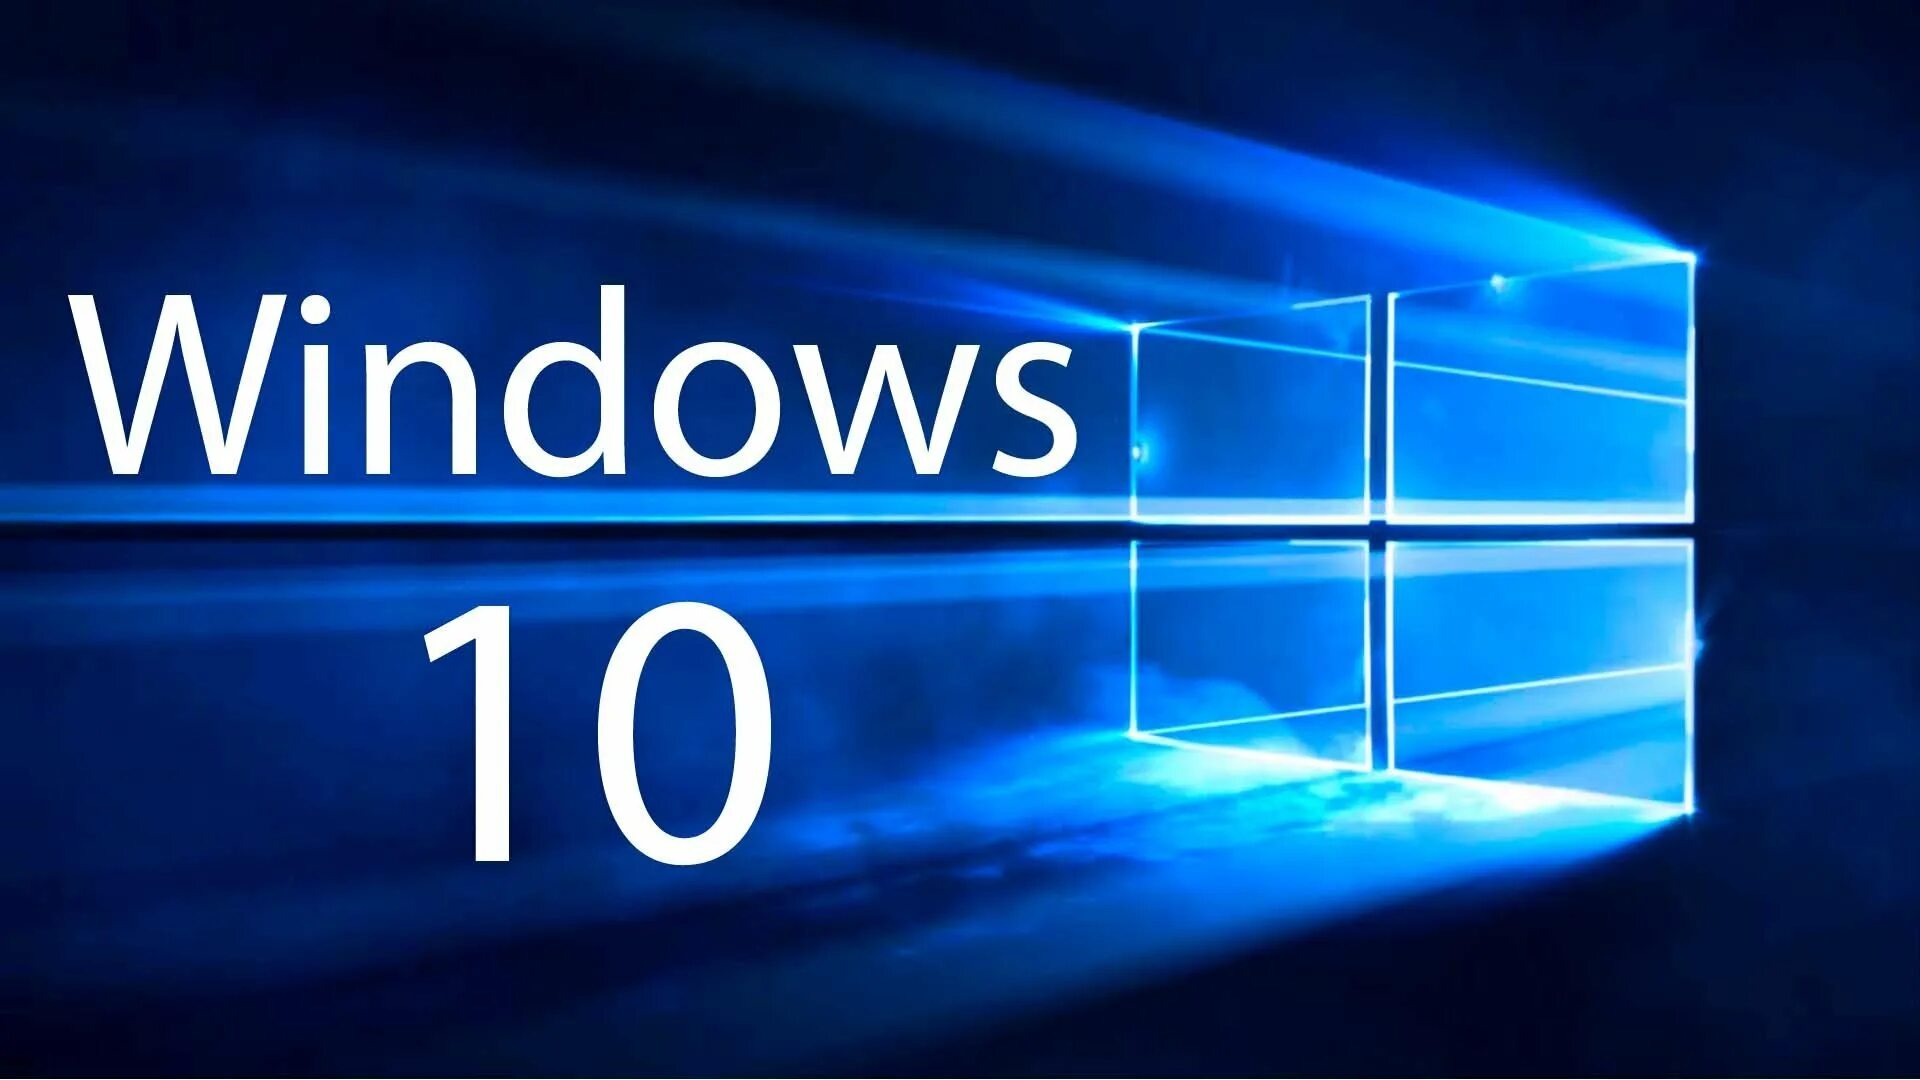 Only windows 10. Виндовс 10. Логотип виндовс 10. Операционная система Windows 10. Картинки виндовс 10.